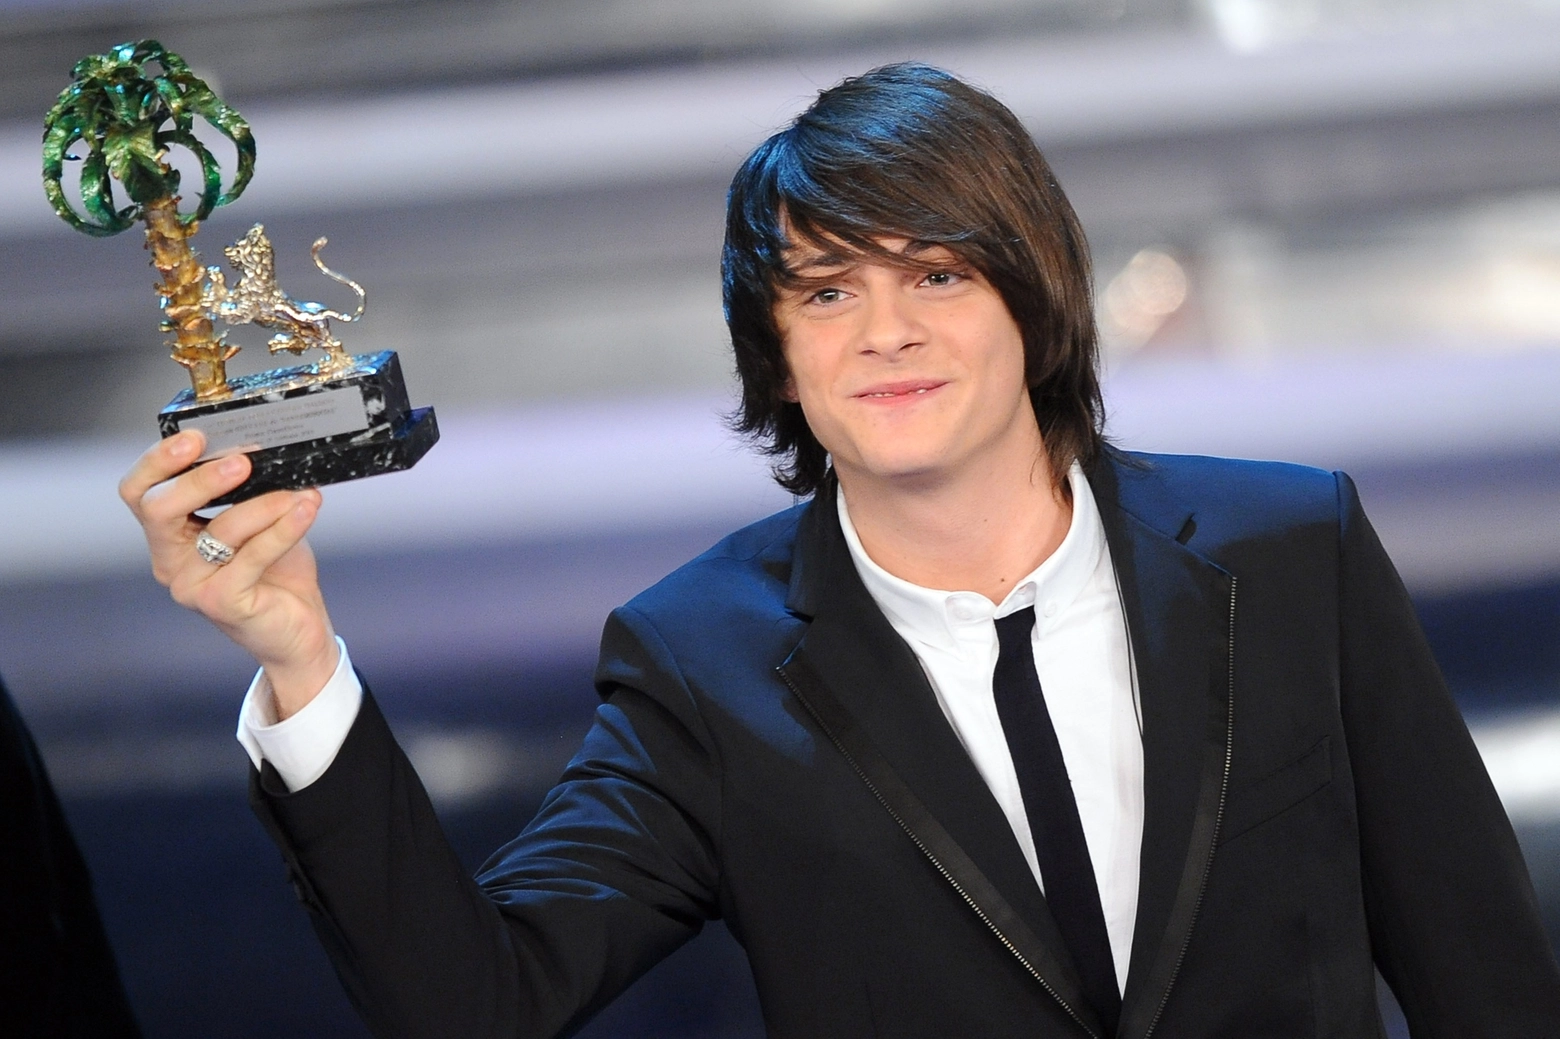 Alessandro Casillo vince Sanremo Giovani nel 2012 (Ansa)